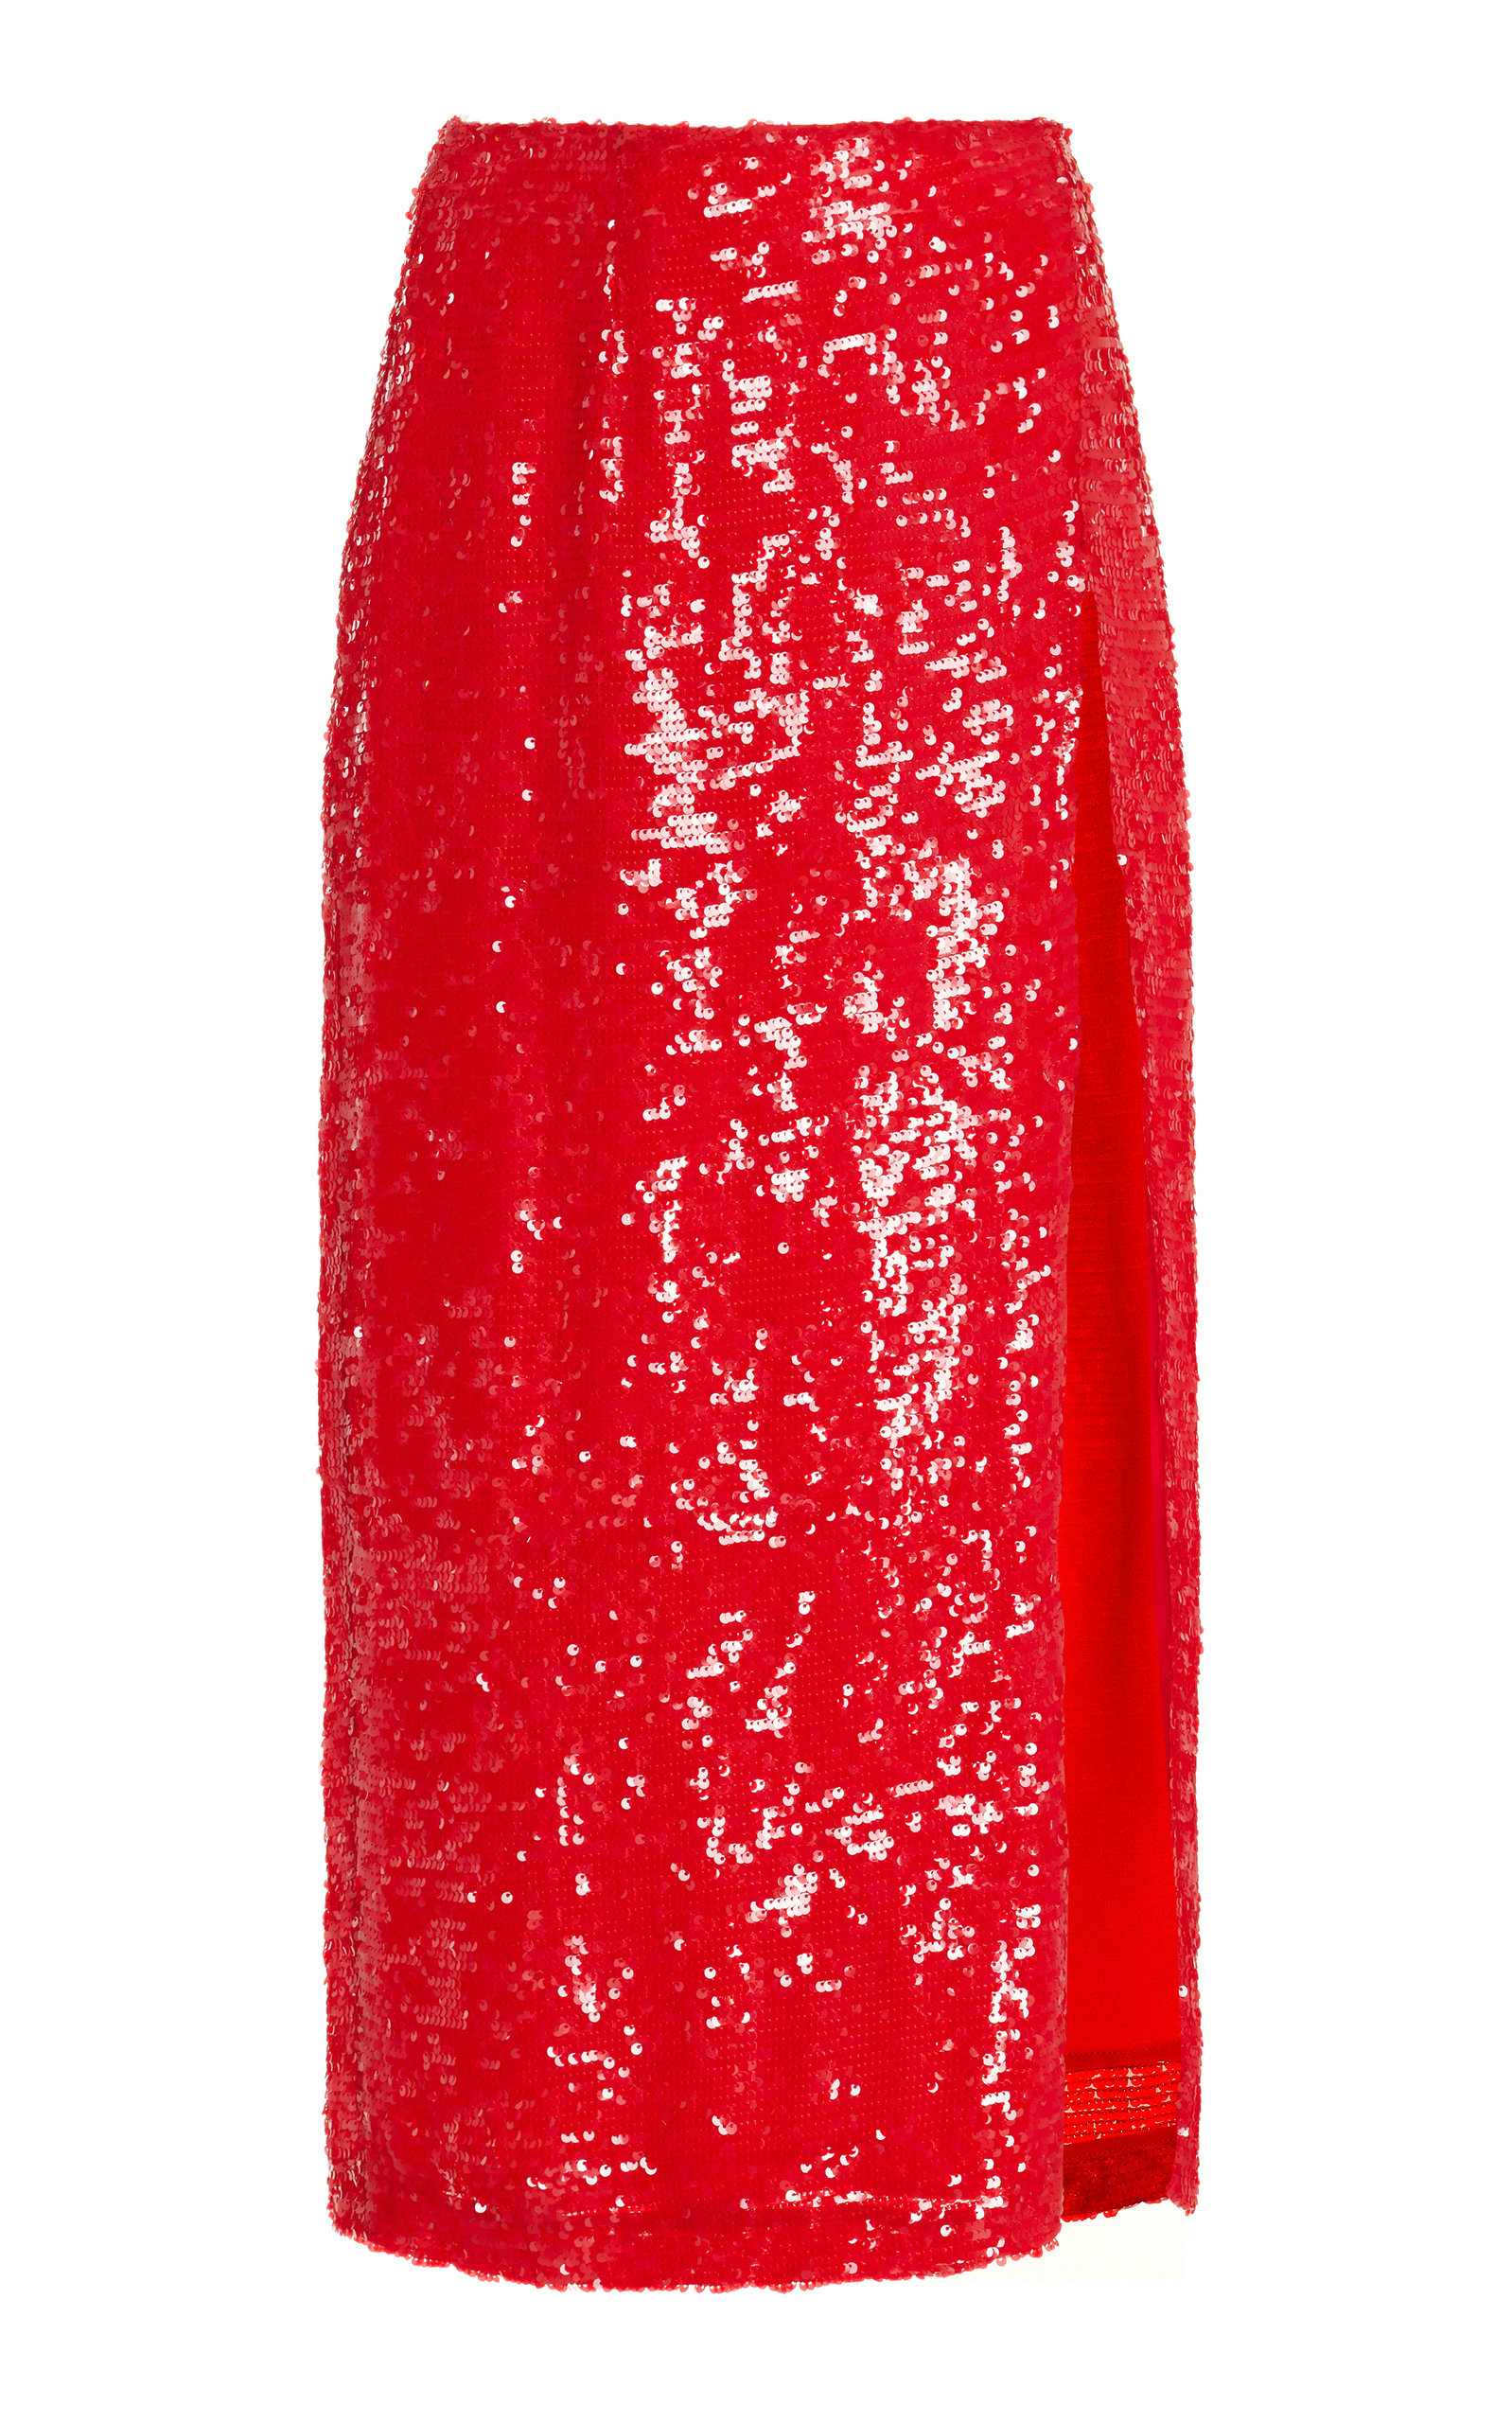 LAPOINTE - Women's Sequined Midi Skirt - Red - US 10 - Moda Operandi